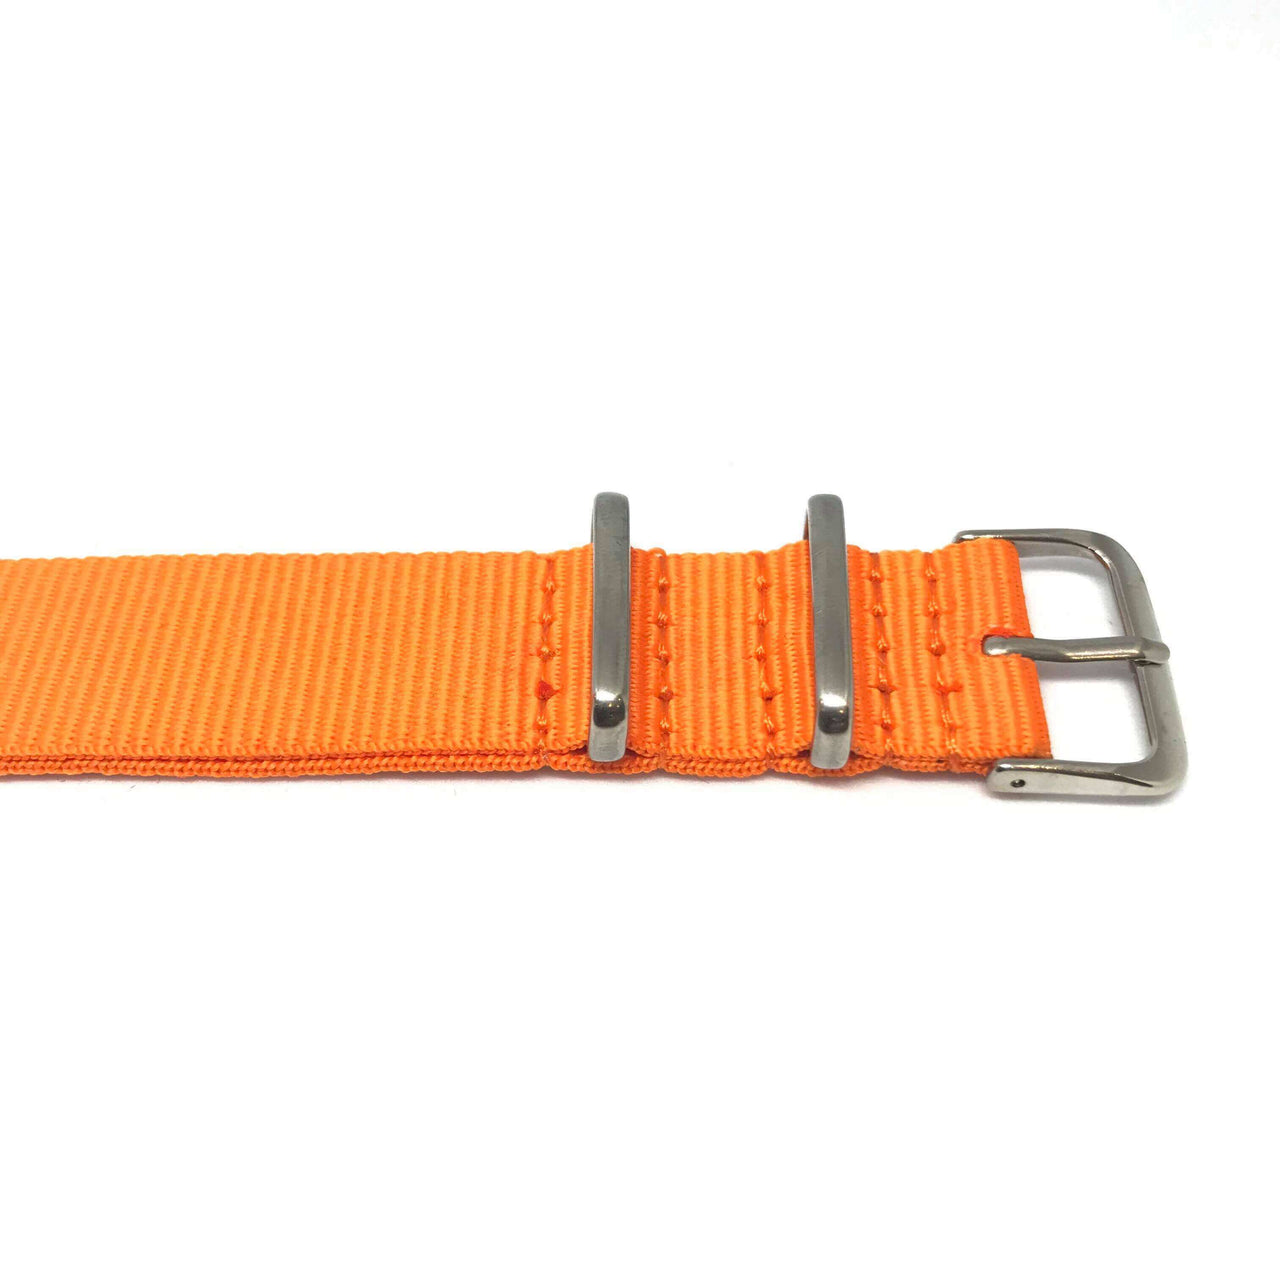 Classic Military Style Strap - Bright Orange